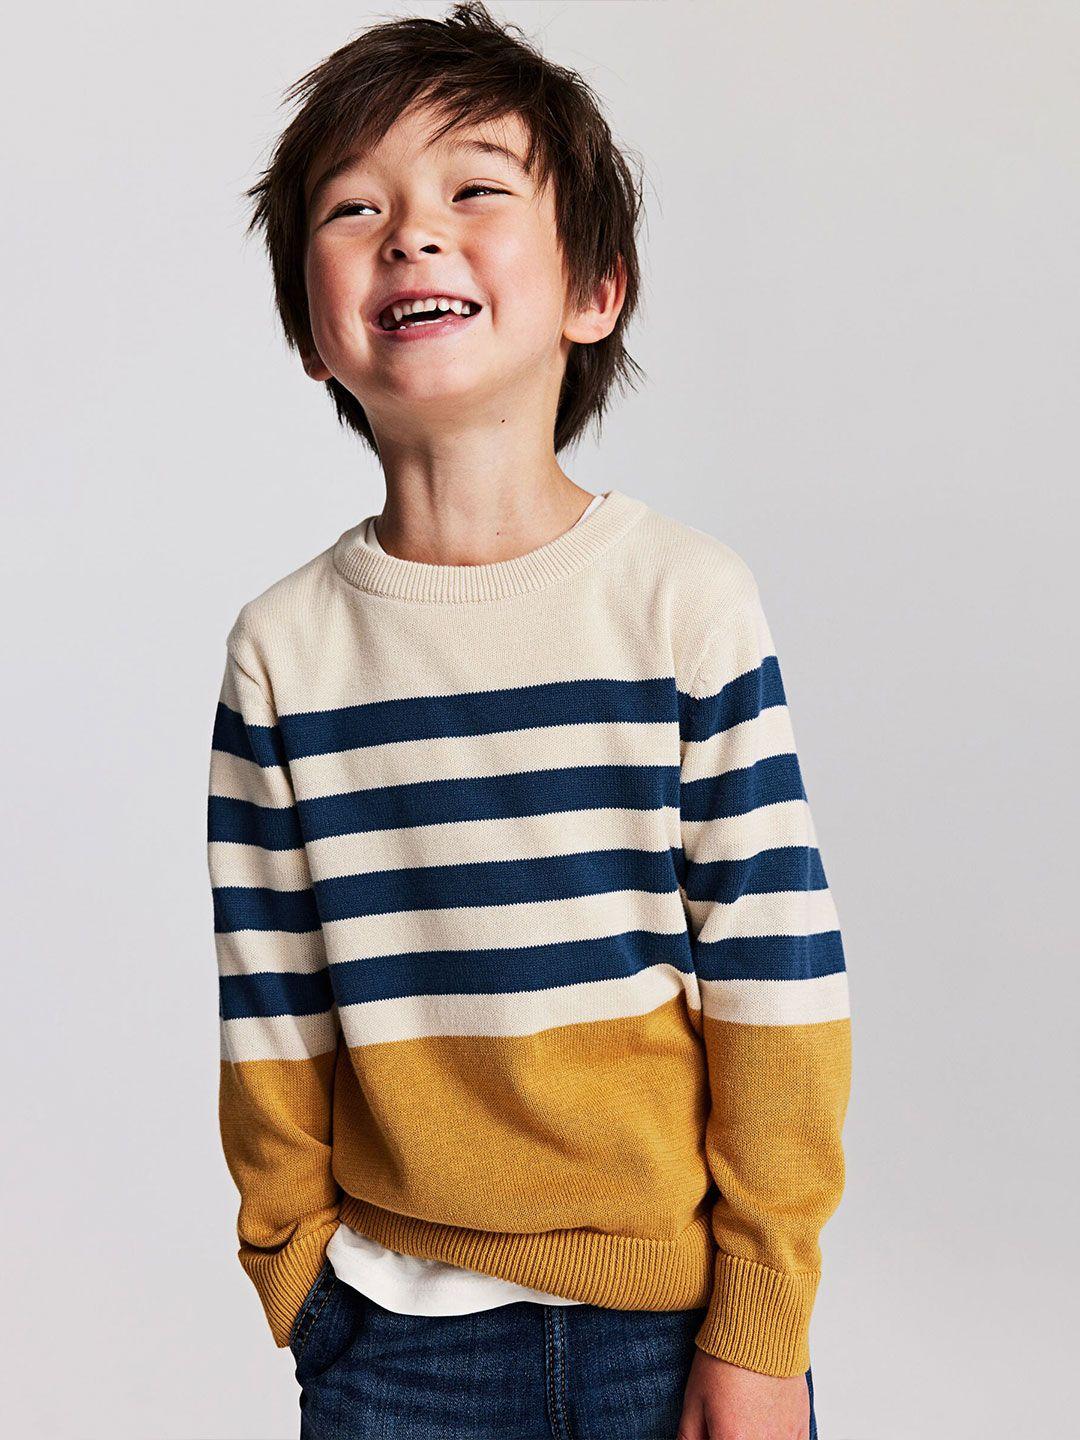 h&m infant boys jacquard-knit pure cotton jumper